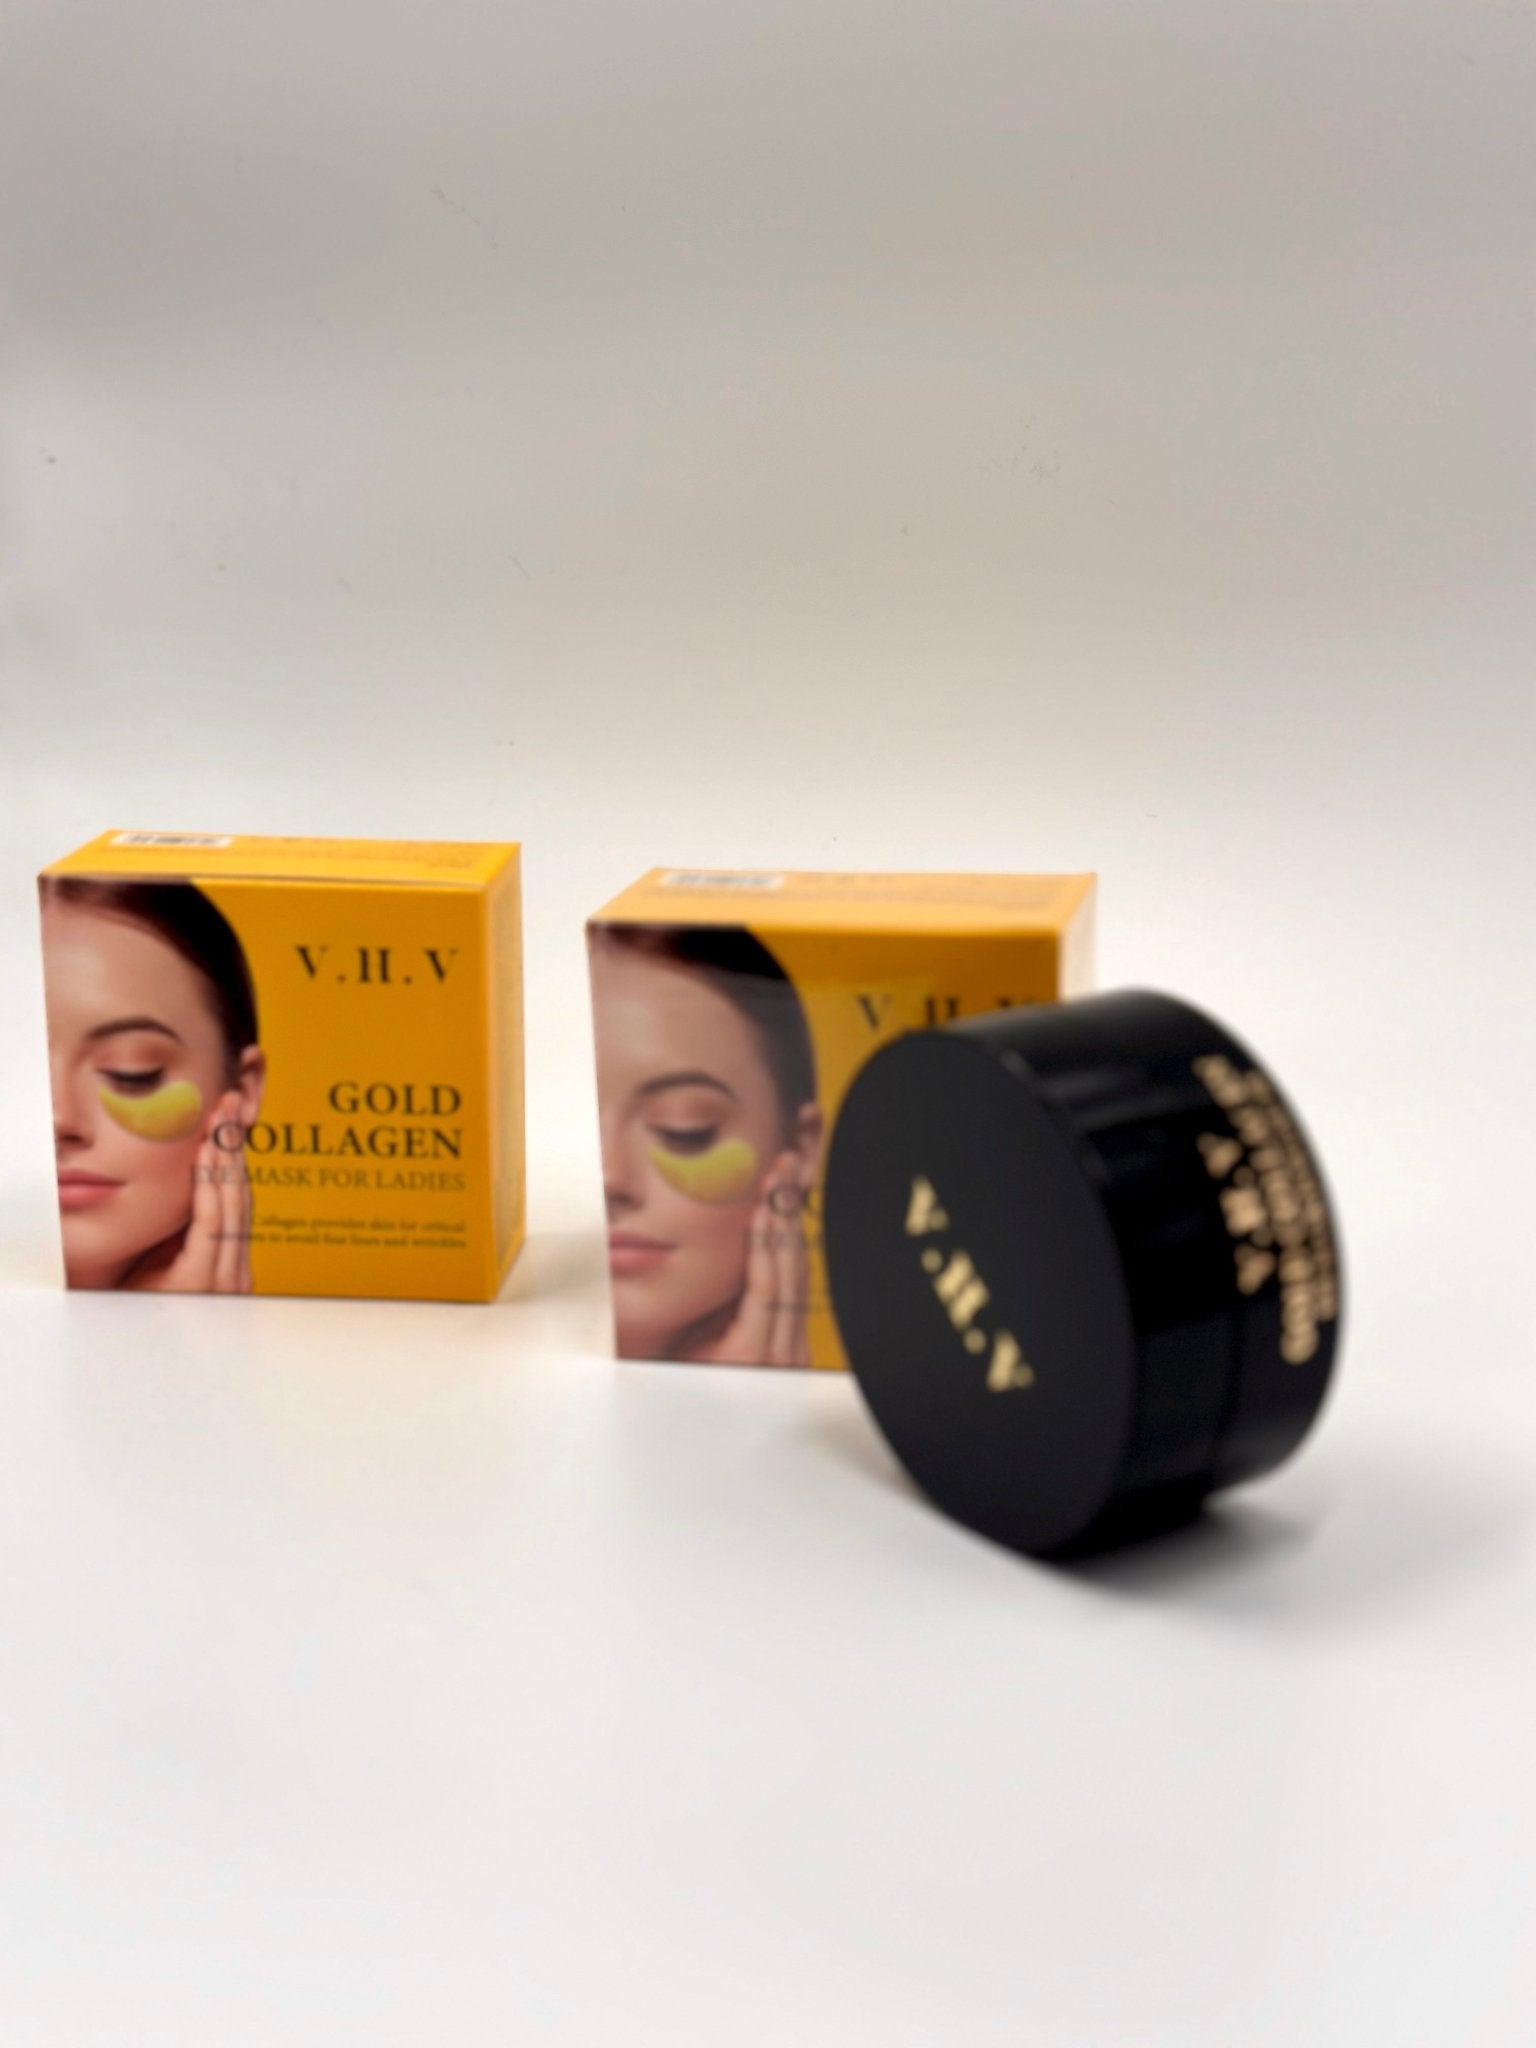 V.H.V Gold Collagen eyepatch - Χρυσή μάσκα ματιών 60 τεμάχια - The GrBazaar of Brands